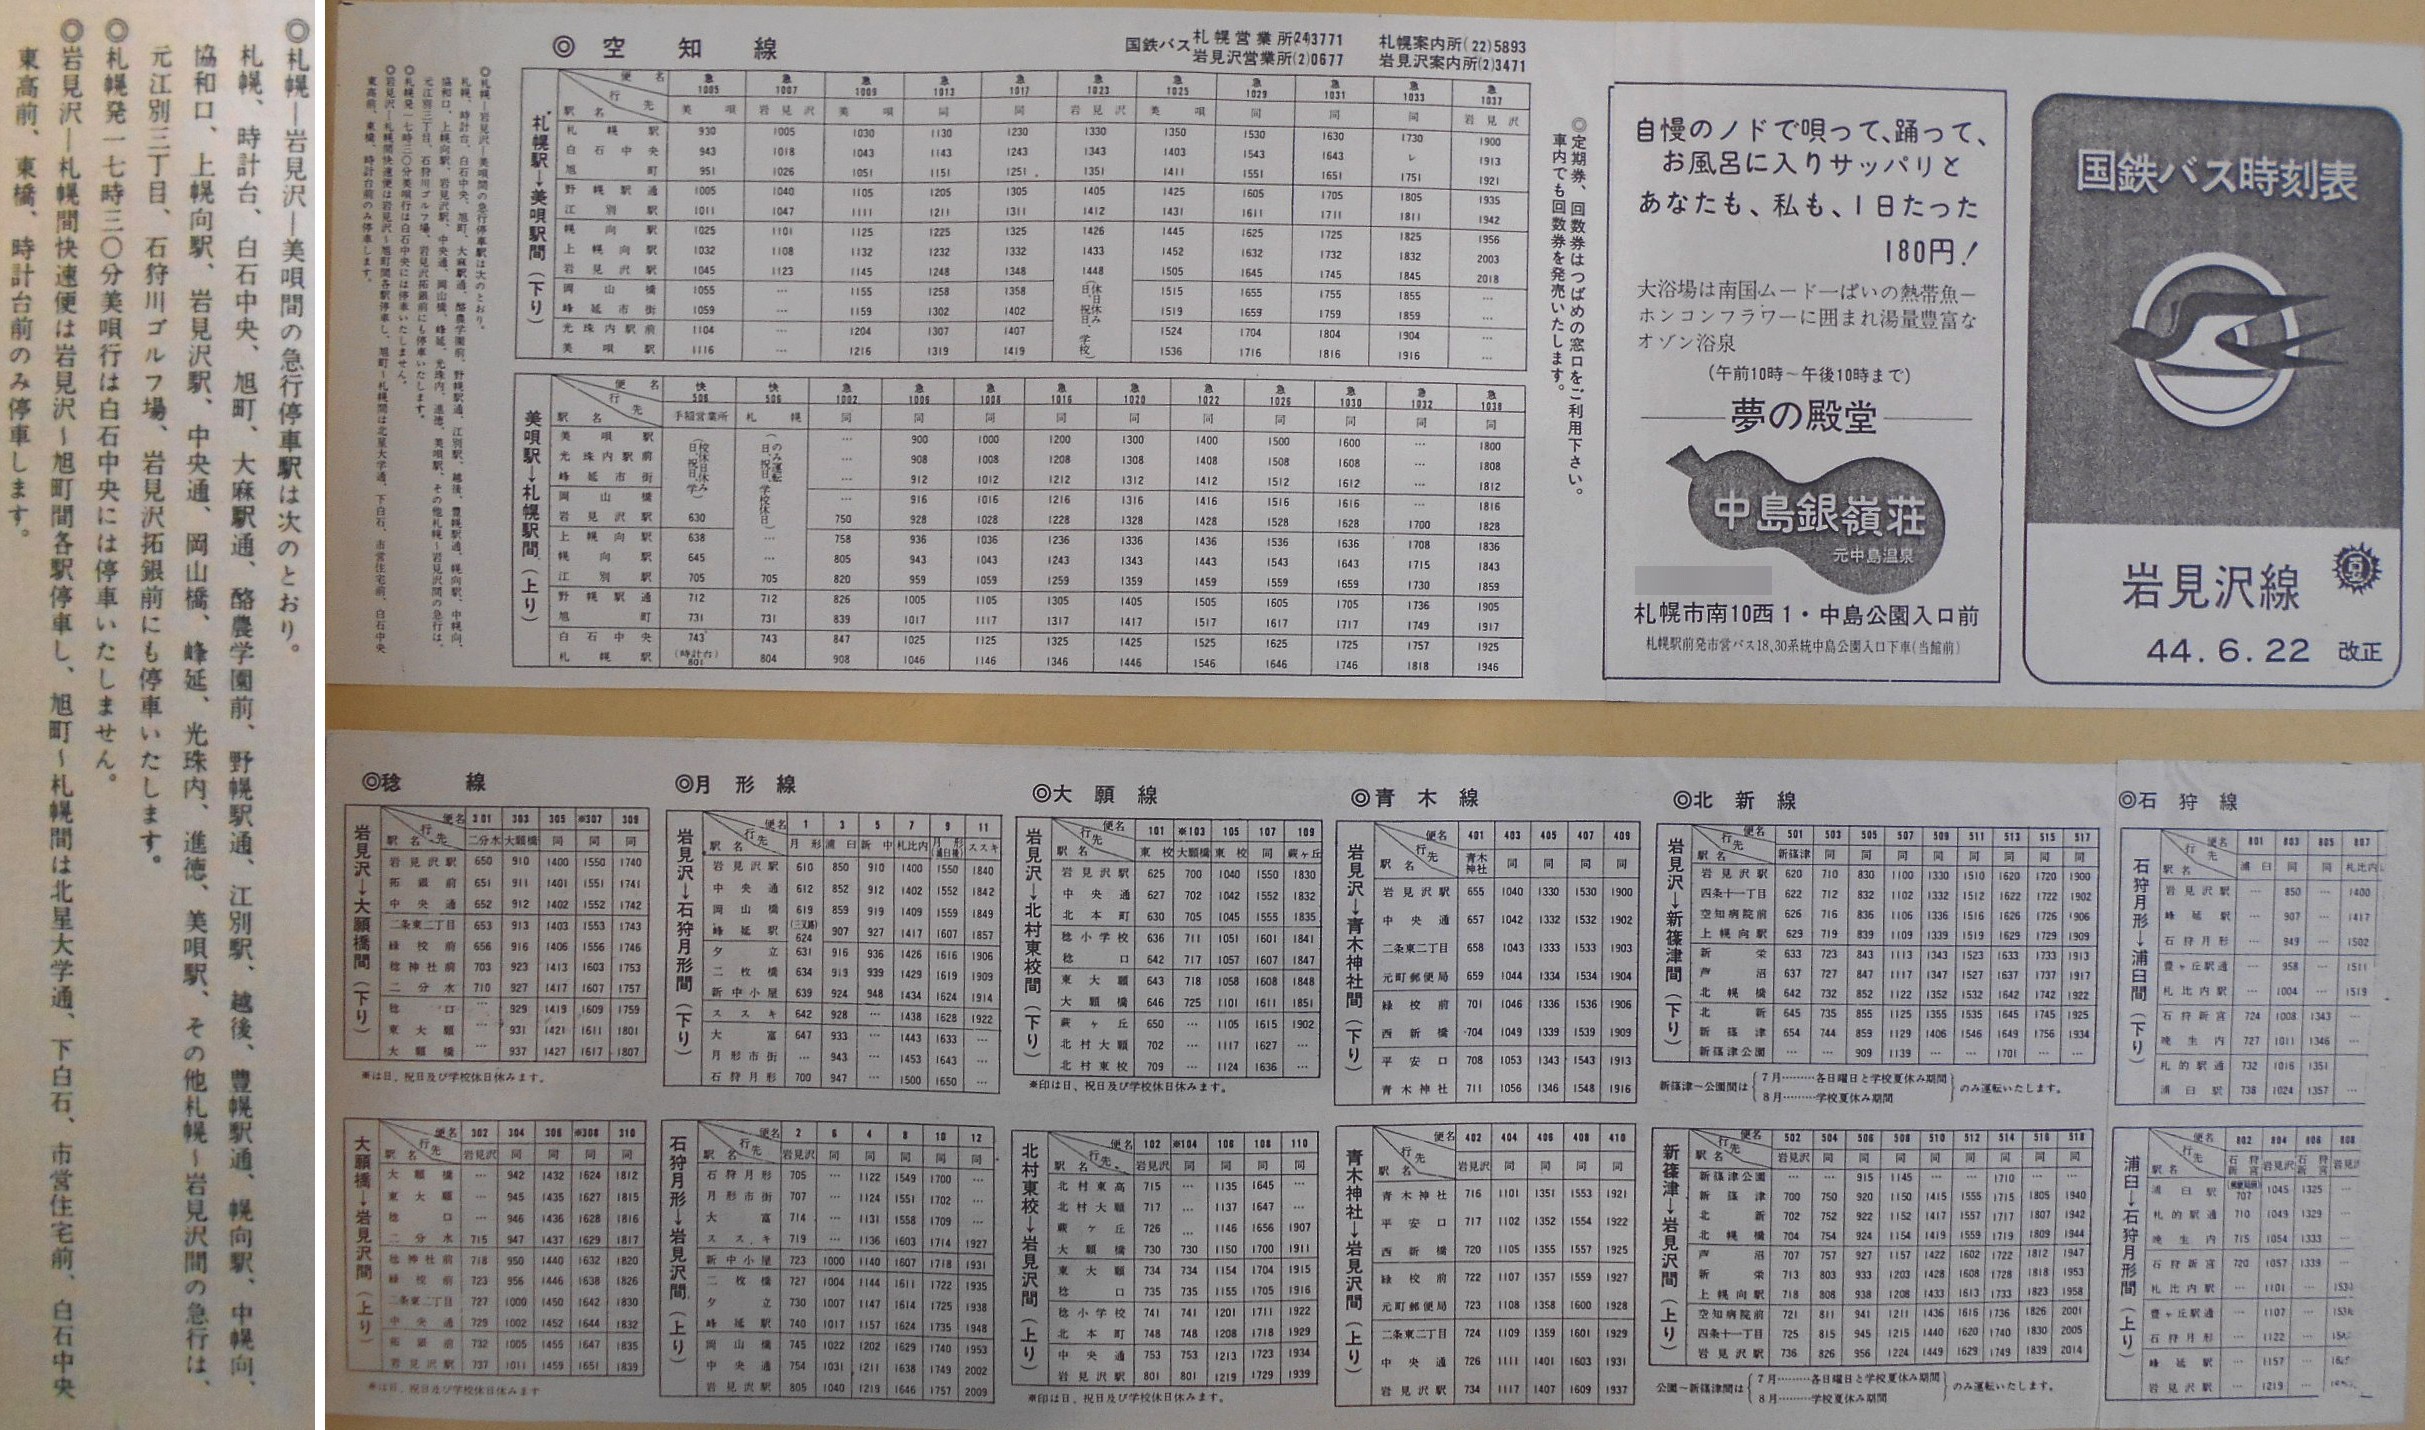 1969-06-22改正_国鉄バス_岩見沢線時刻表